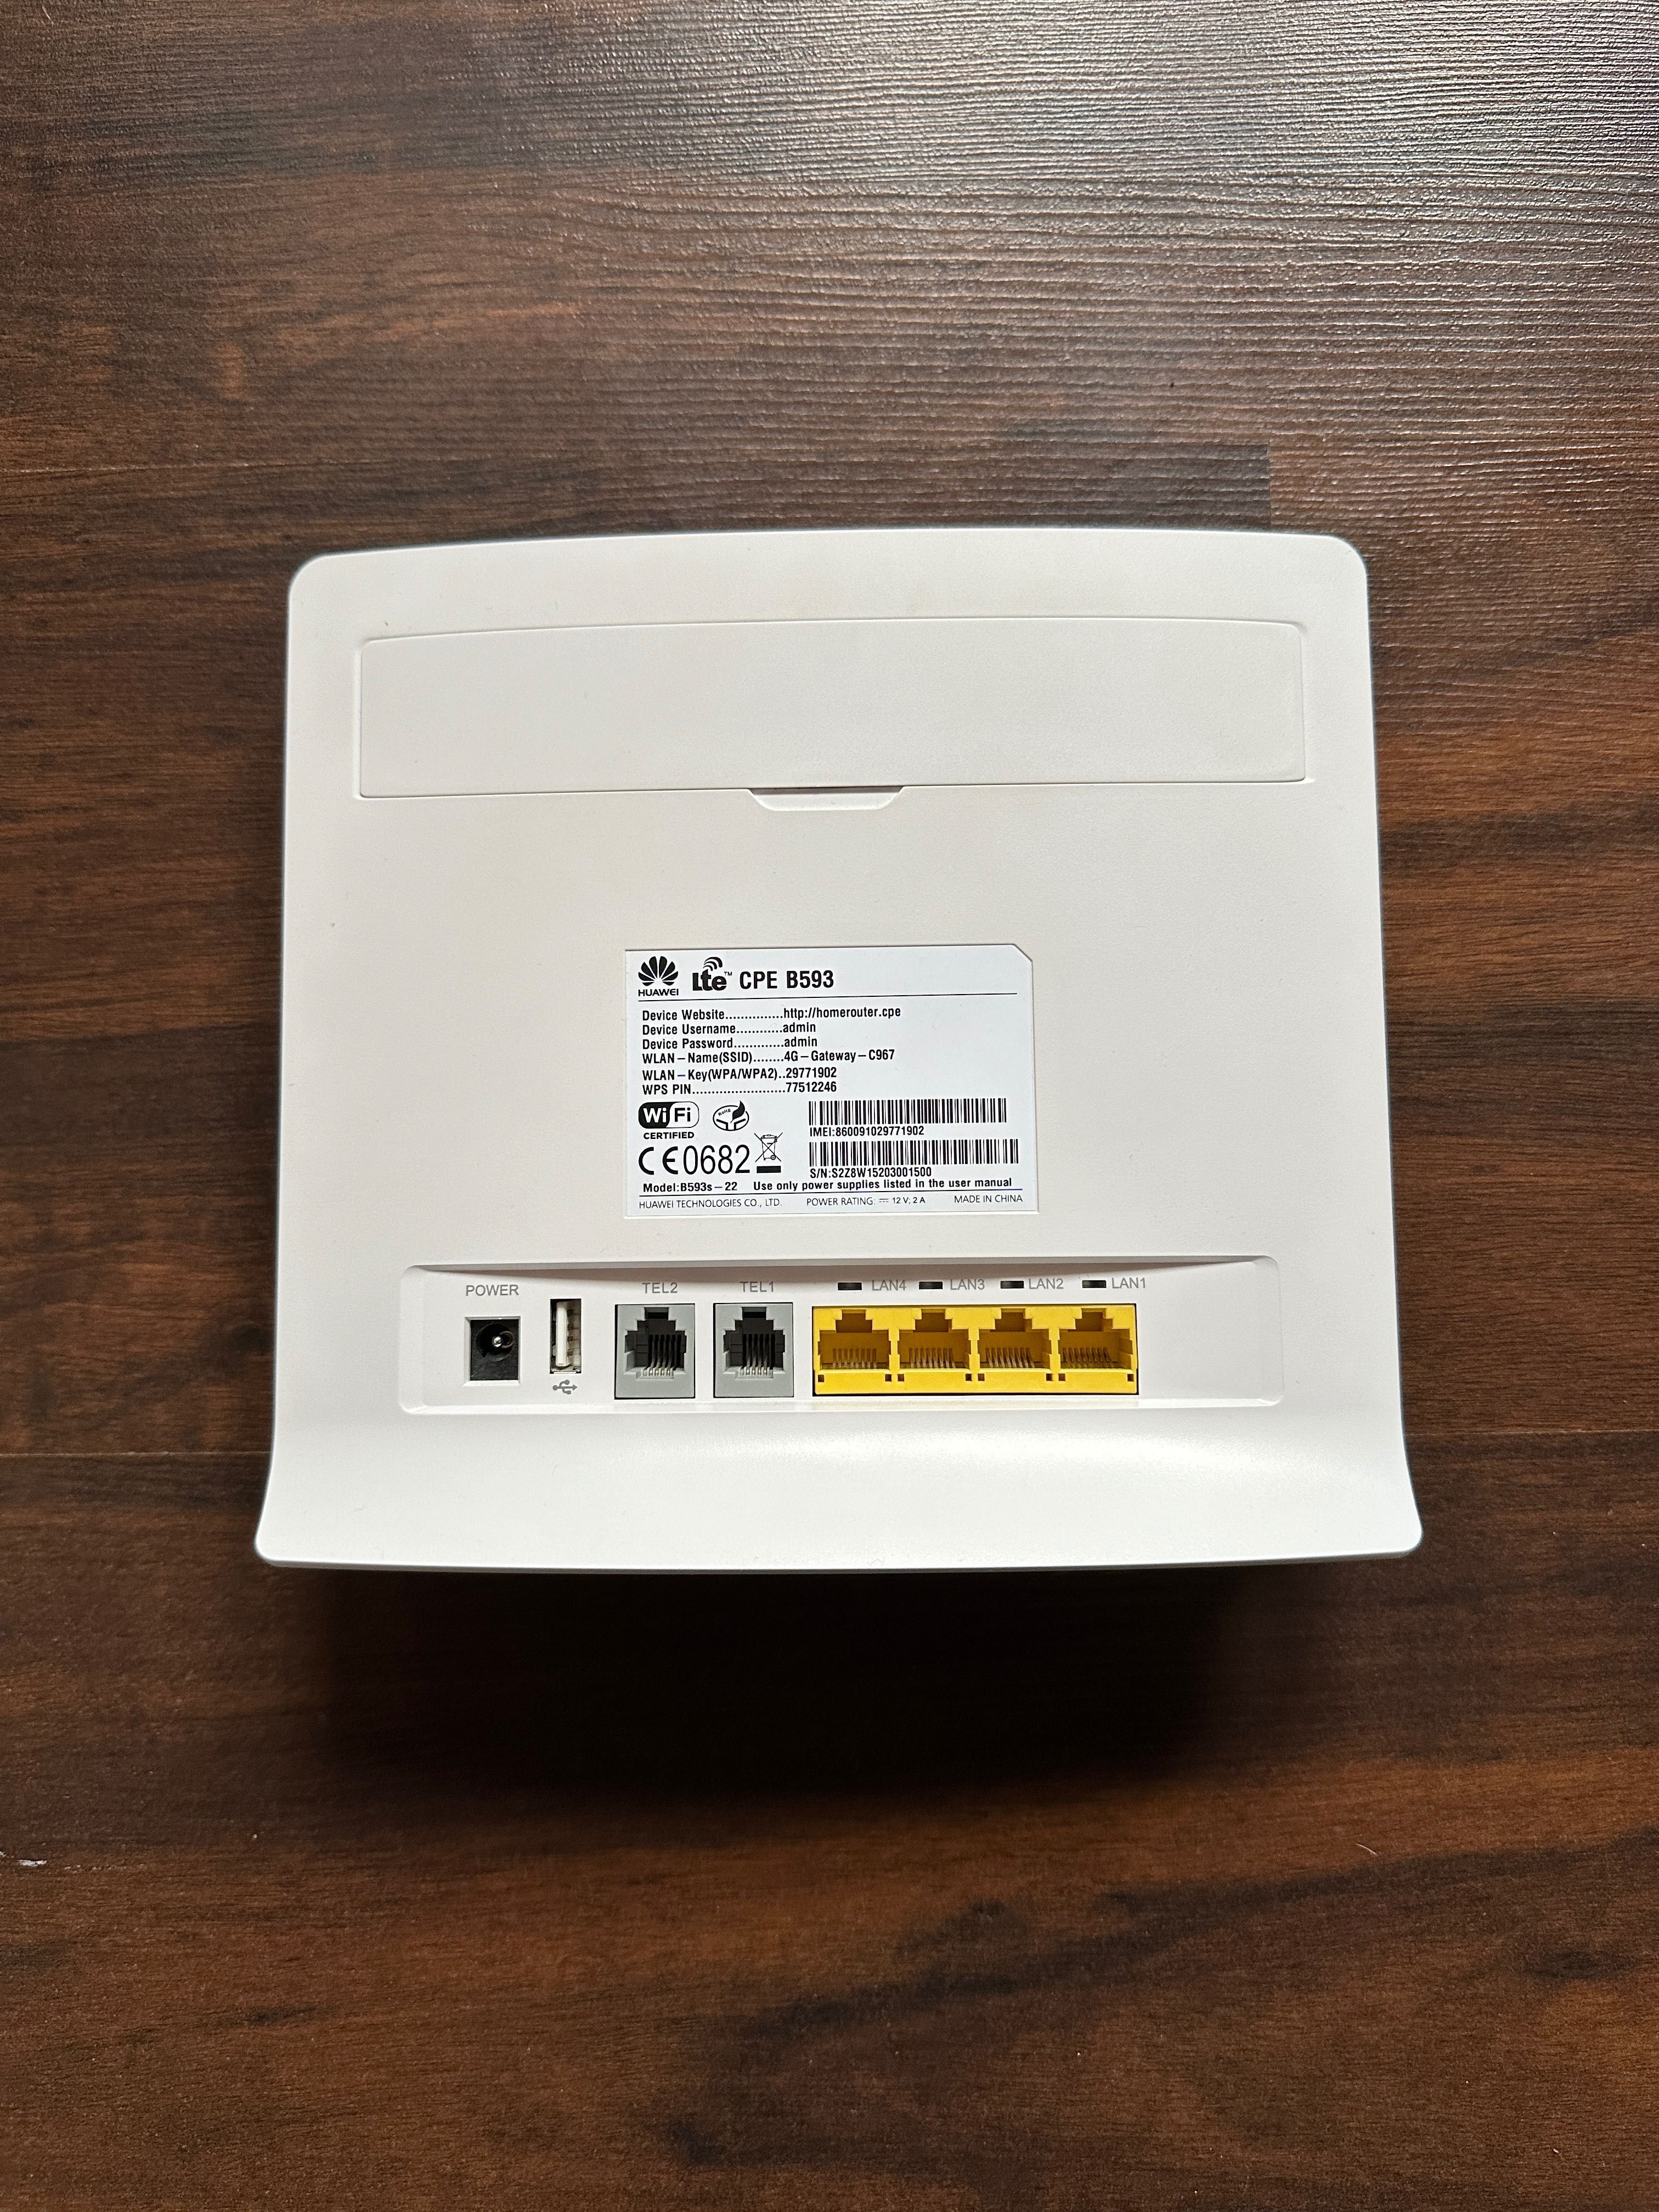 Router Huawei B593s - 22 biały